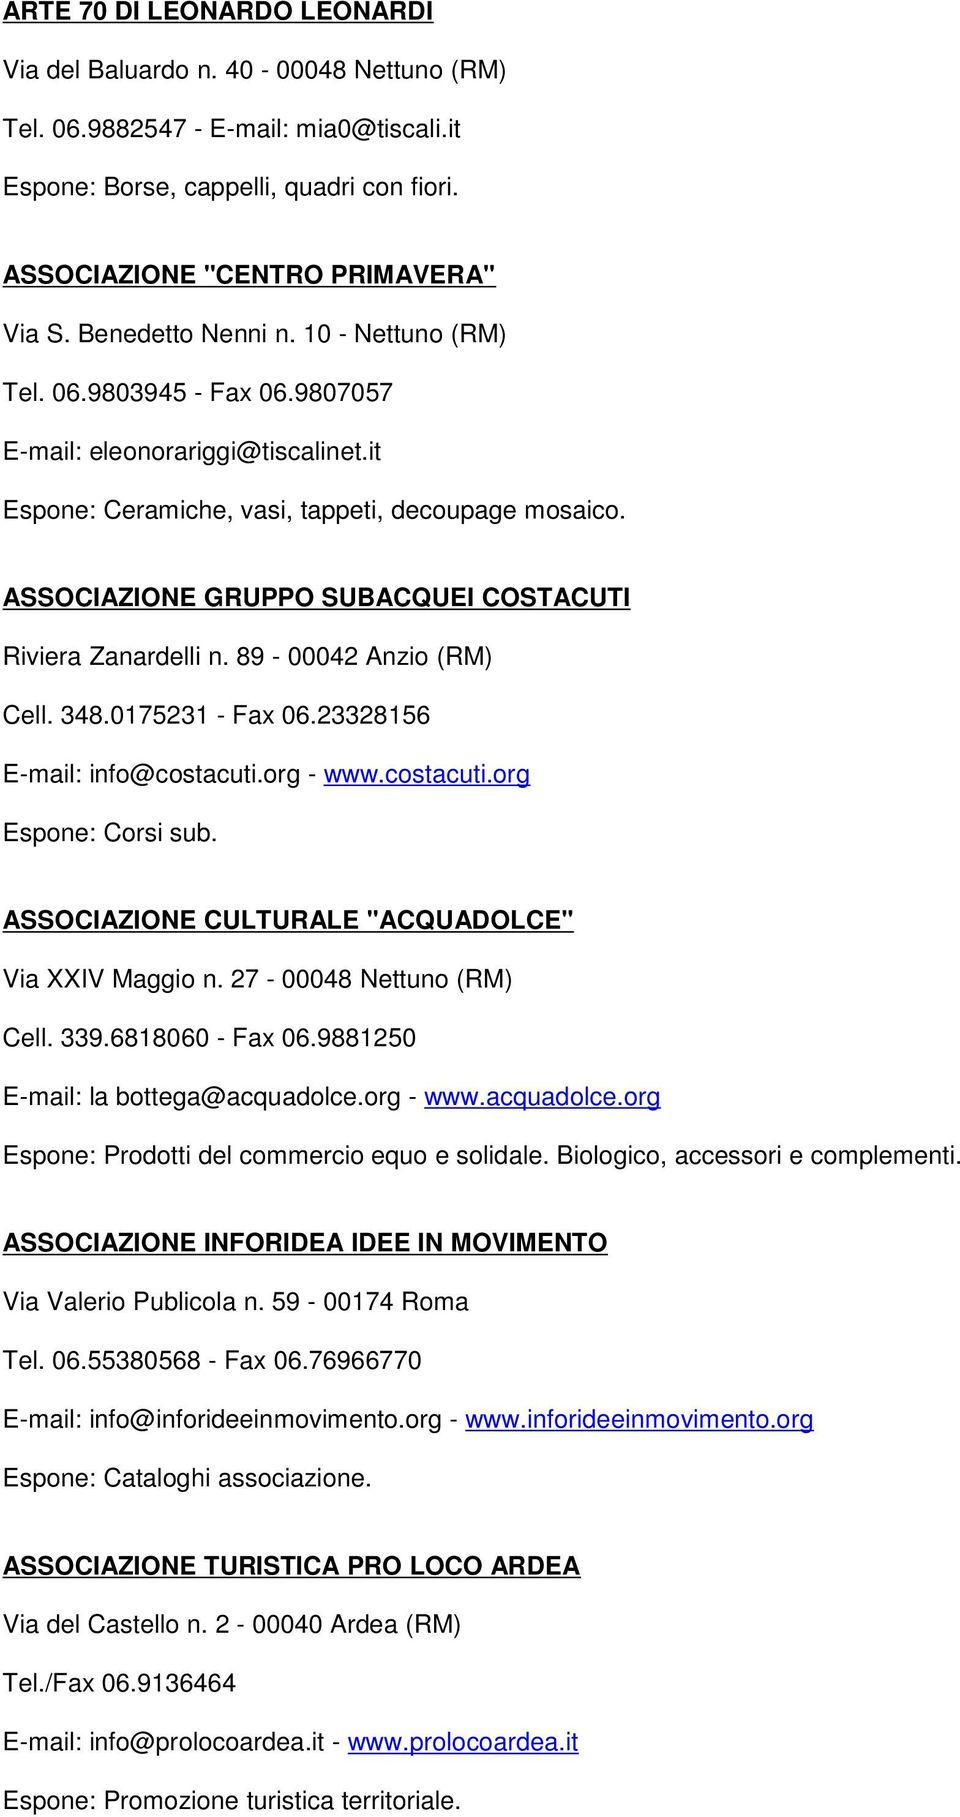 ASSOCIAZIONE GRUPPO SUBACQUEI COSTACUTI Riviera Zanardelli n. 89-00042 Anzio (RM) Cell. 348.0175231 - Fax 06.23328156 E-mail: info@costacuti.org - www.costacuti.org Espone: Corsi sub.